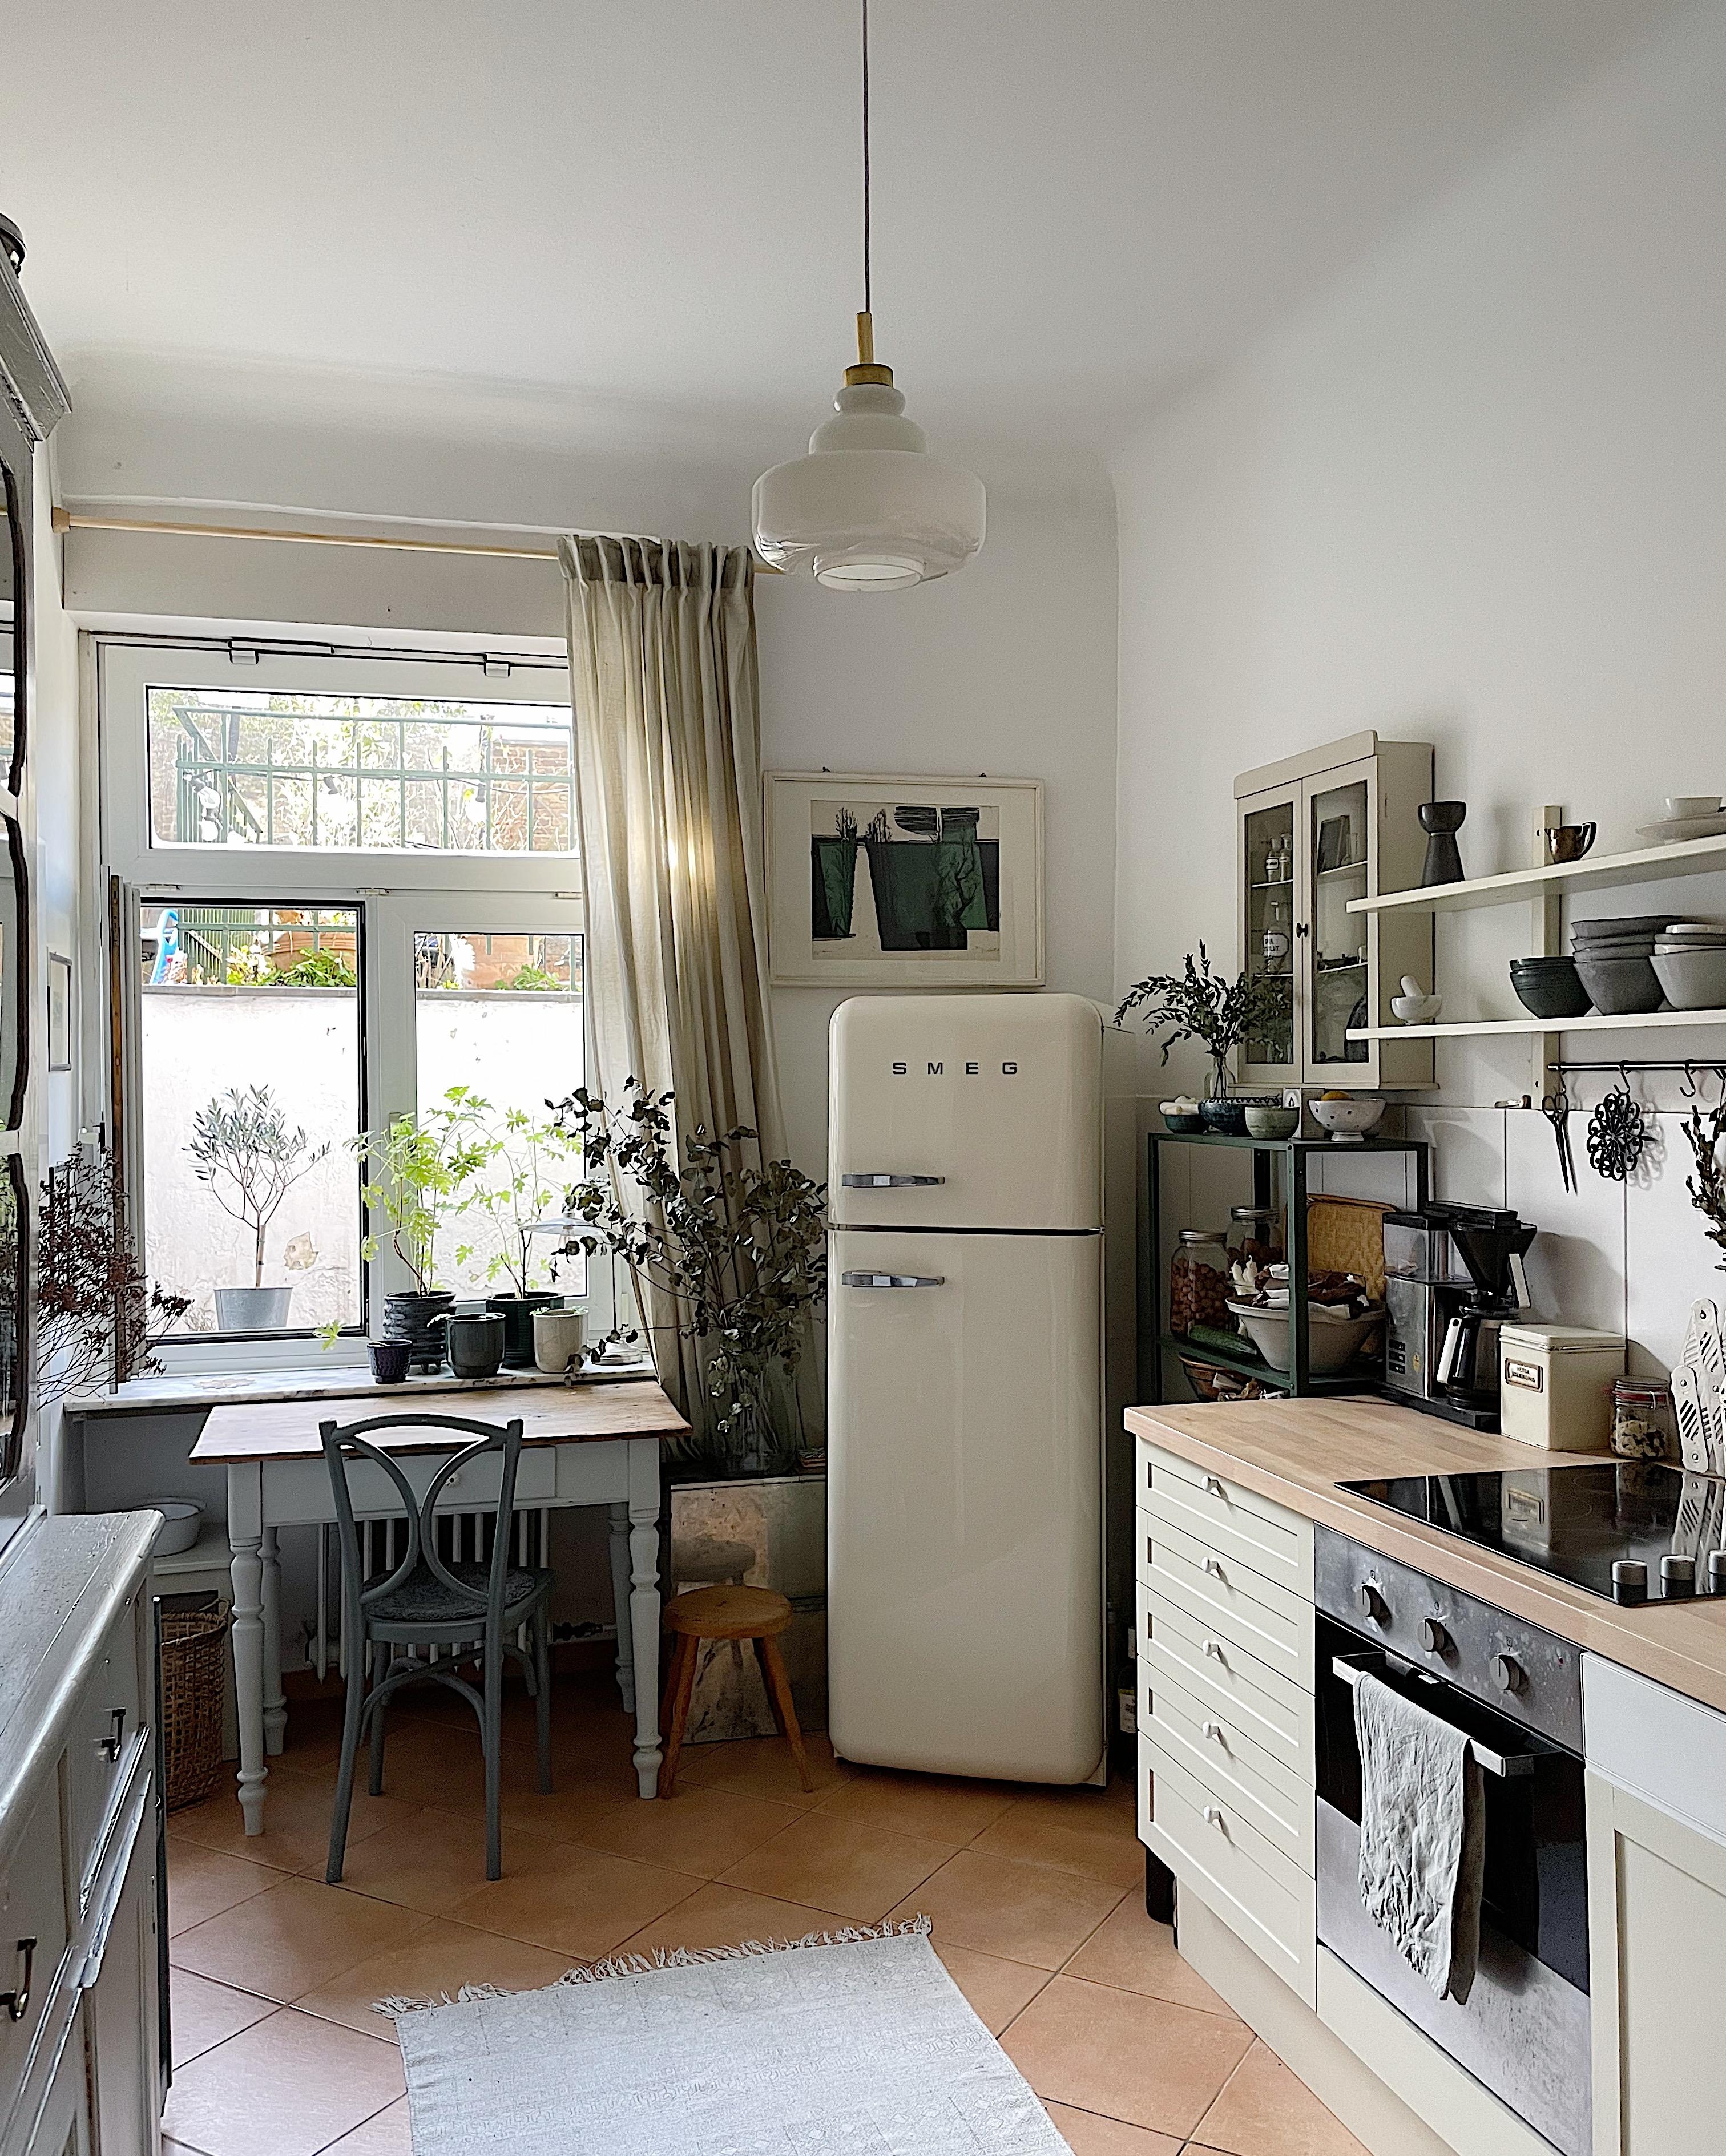 Ein Vorhang für die Küche

#Küche #Vintage #Altbauliebe